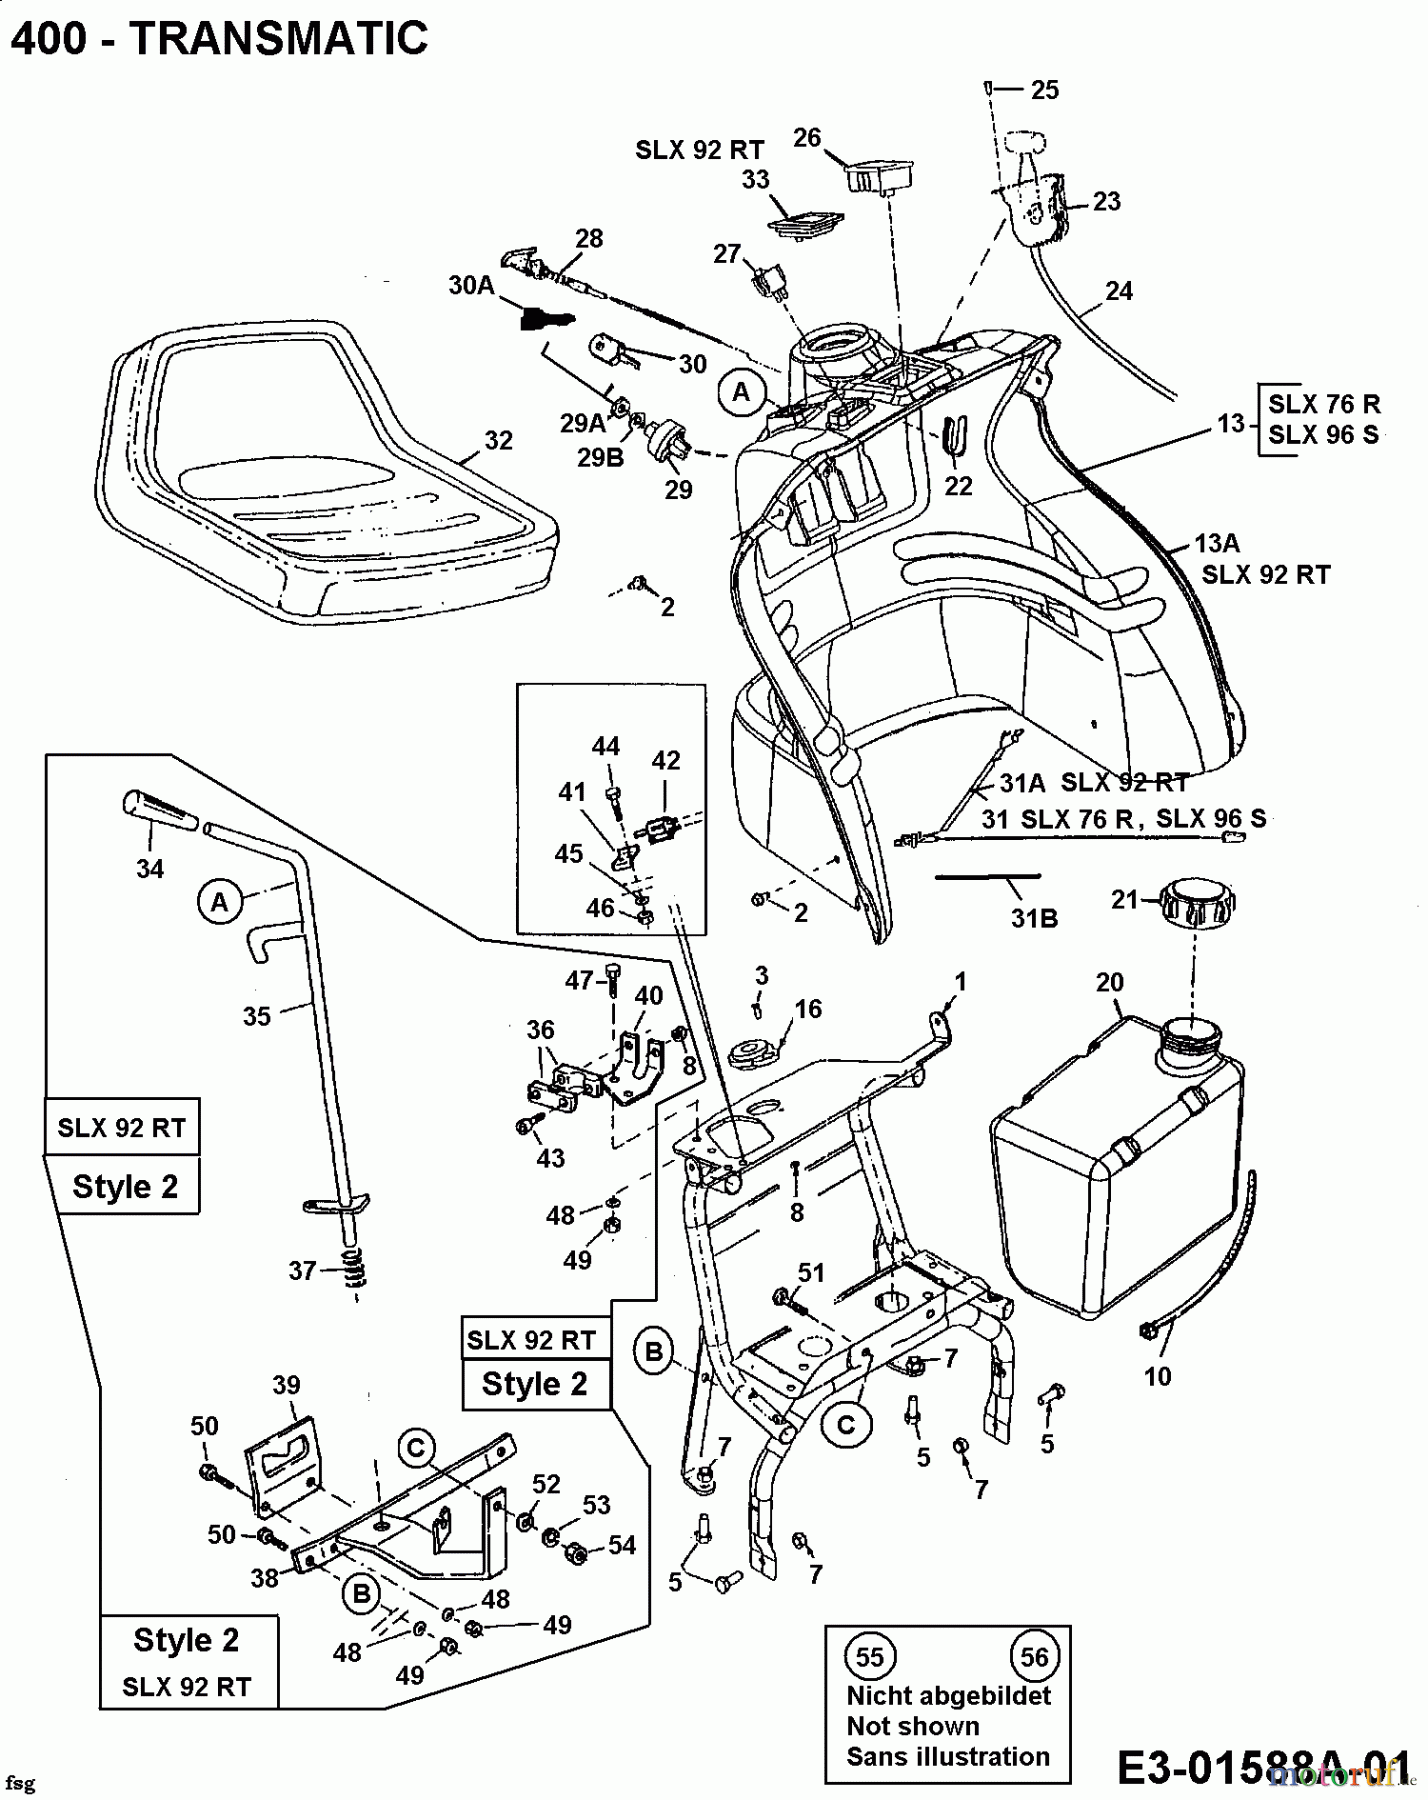  Gutbrod Rasentraktoren SLX 76 R 13AC476A690  (2002) Armaturenbrett